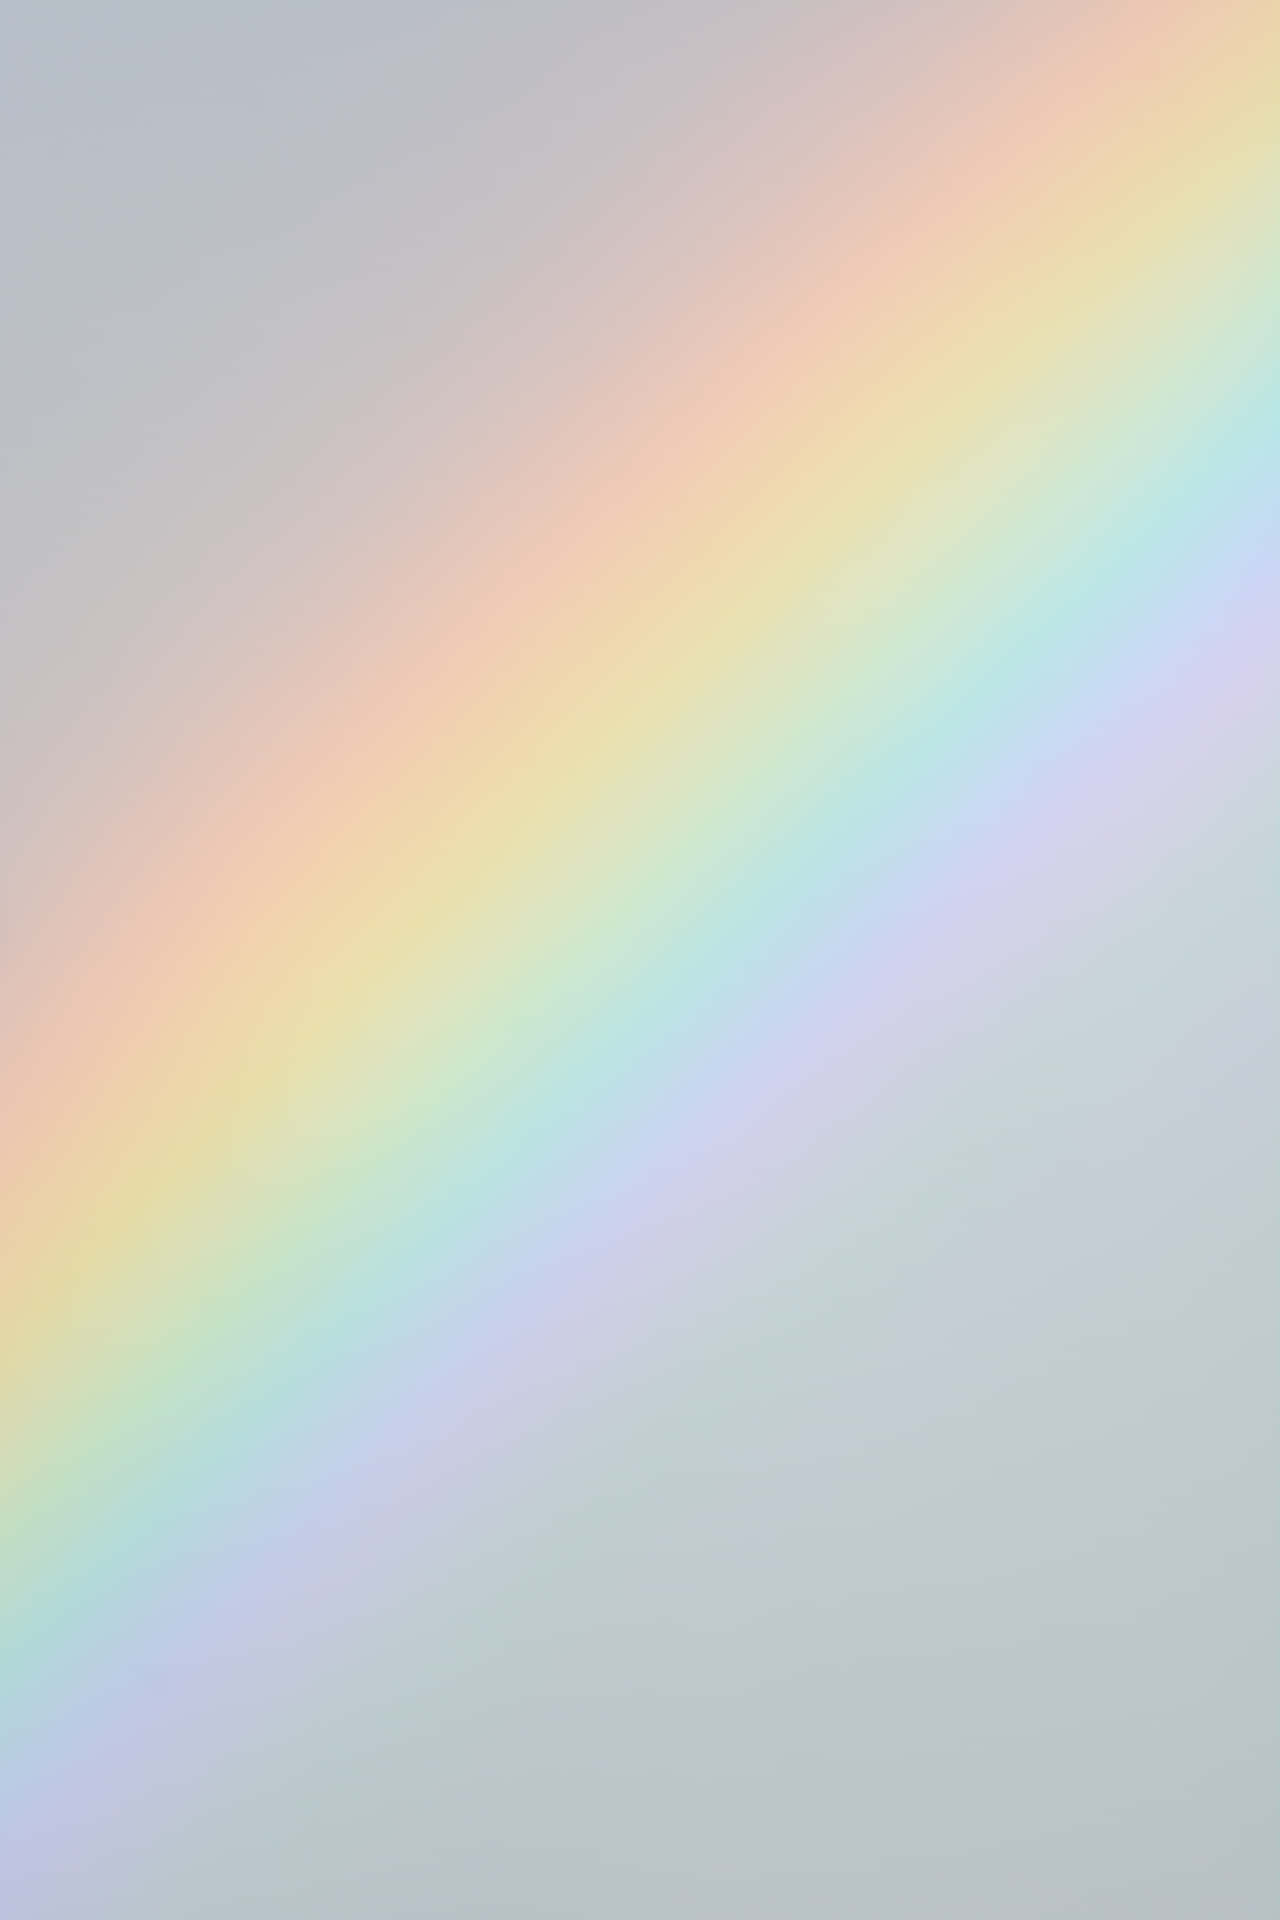 Visadina Sanna Färger Med Denna Vackra Pastellregnbåge Som Dator- Eller Mobilbakgrund. Wallpaper